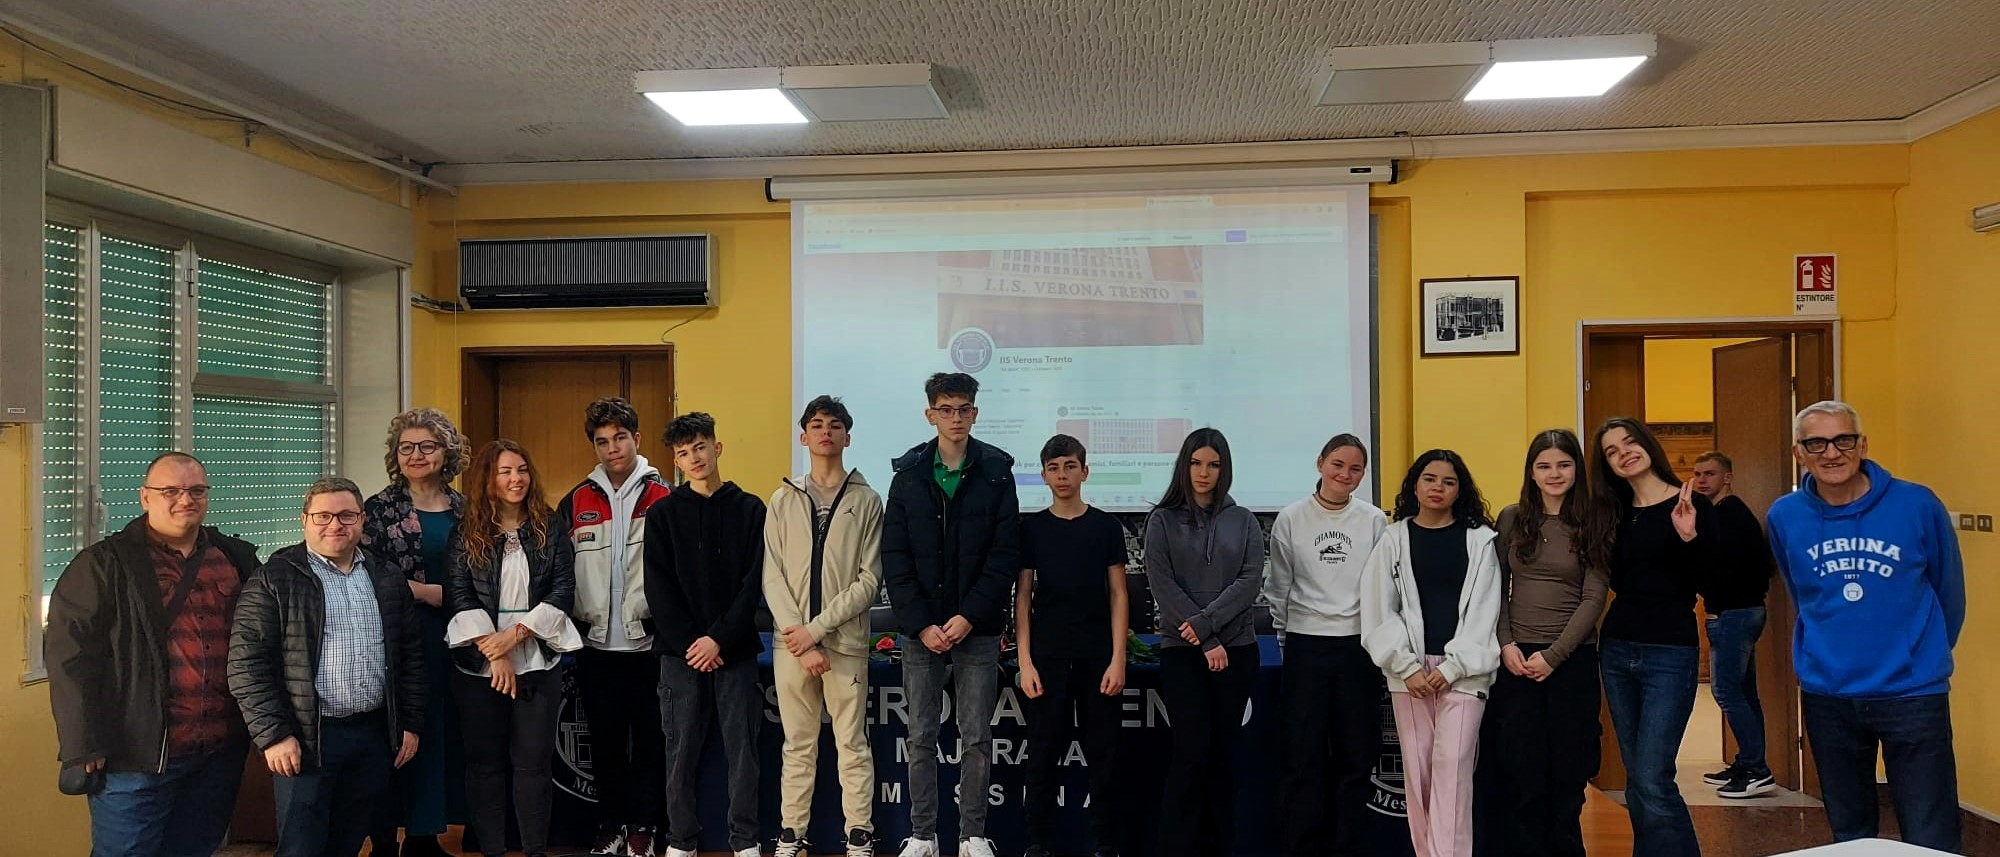 Erasmus+, studenti di una scuola romena visitano l’IIS Verona Trento